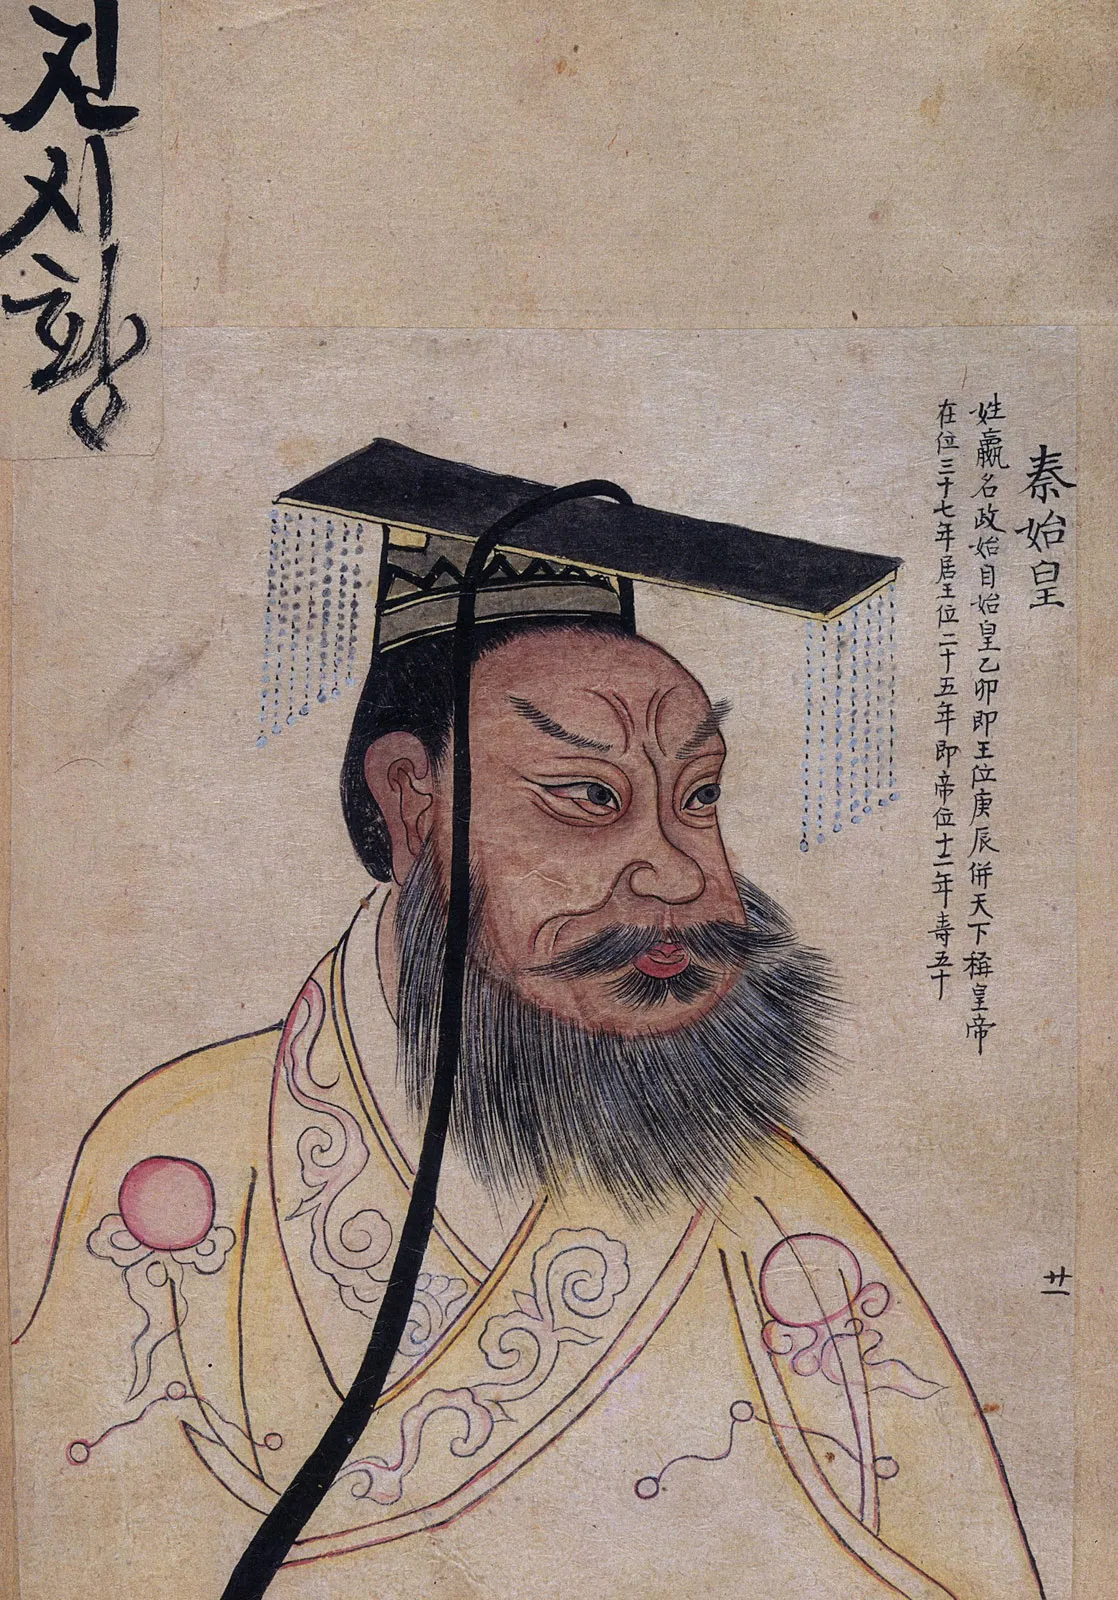 Qin Shi Huang and his Chinese empire